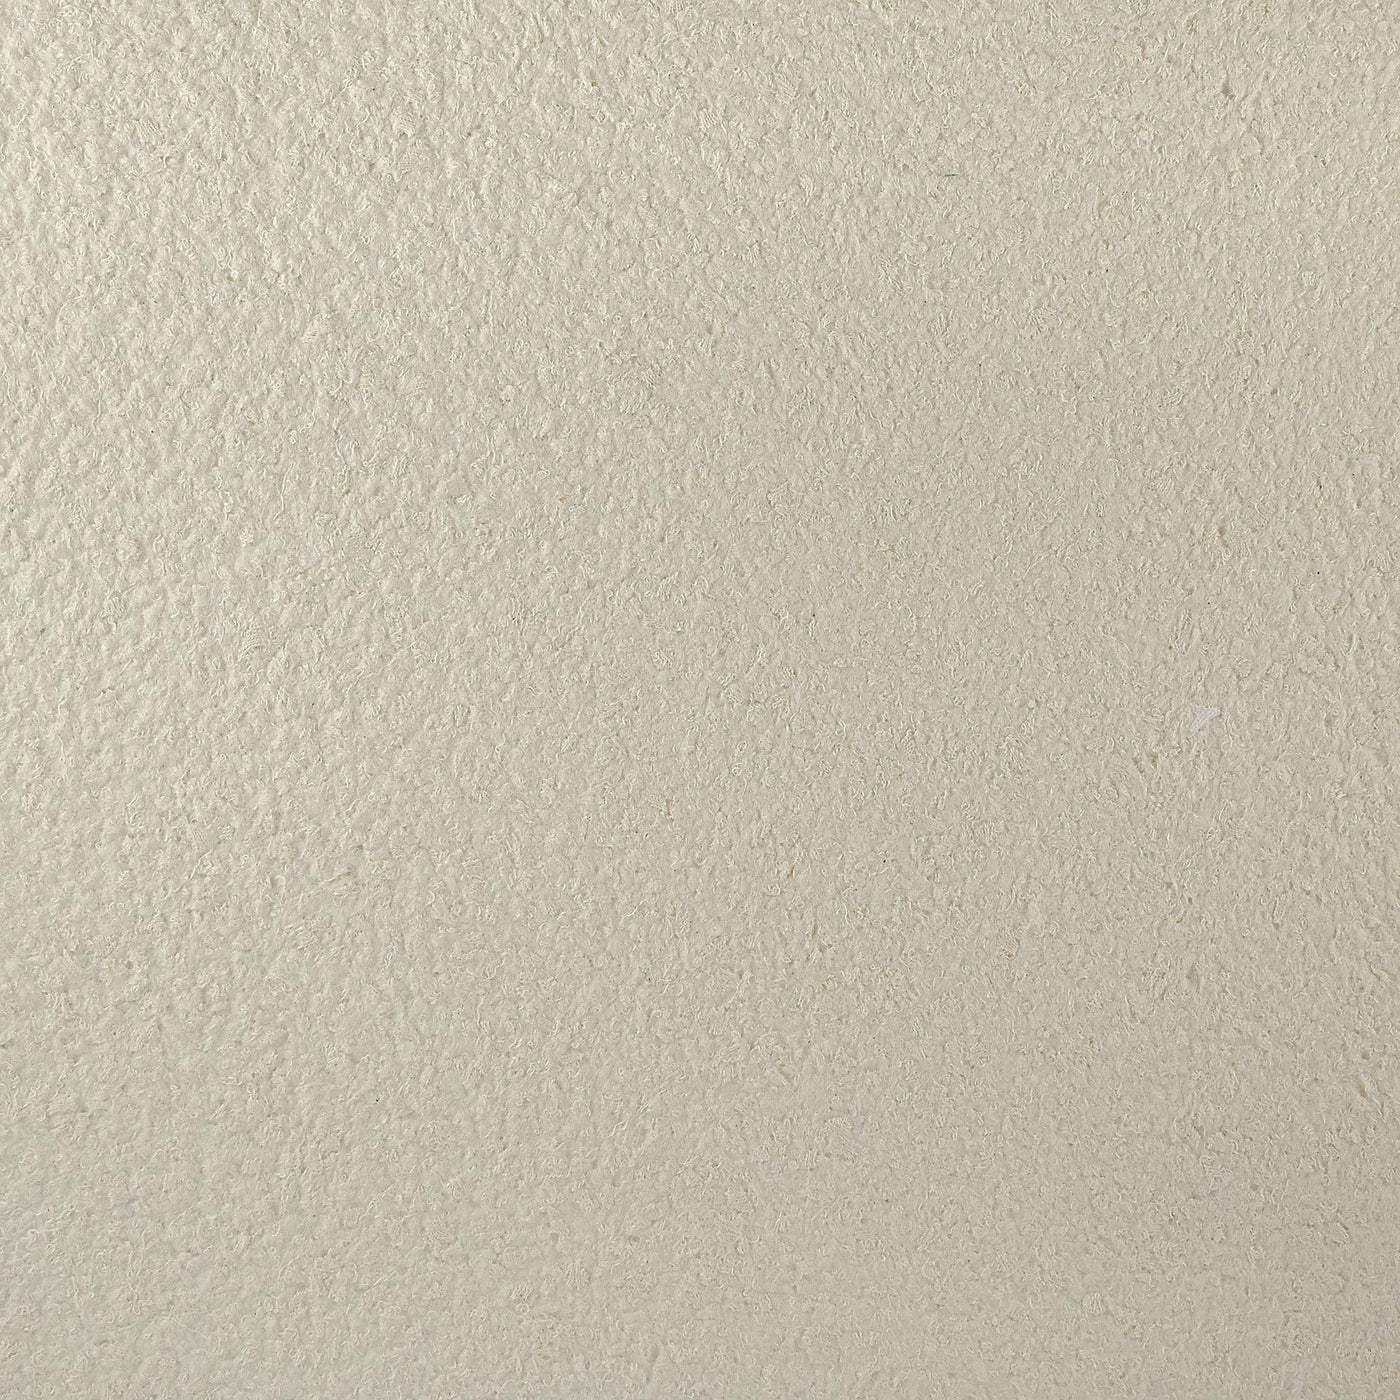 Cotton plaster color decor vanilla